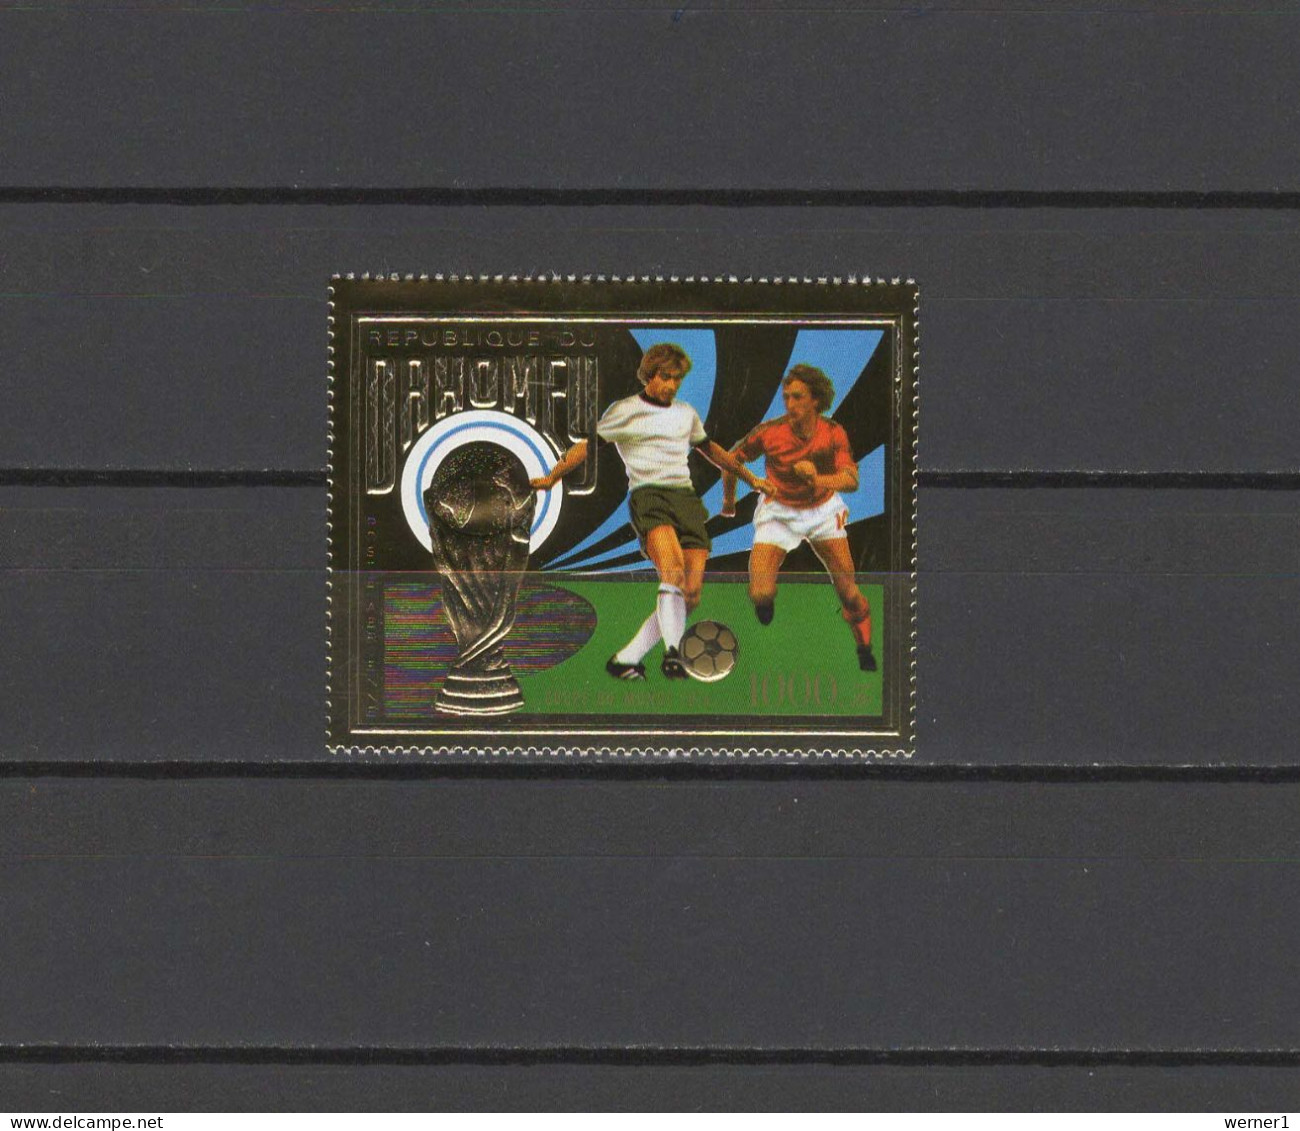 Dahomey 1974 Football Soccer World Cup Gold Stamp MNH - 1974 – Westdeutschland